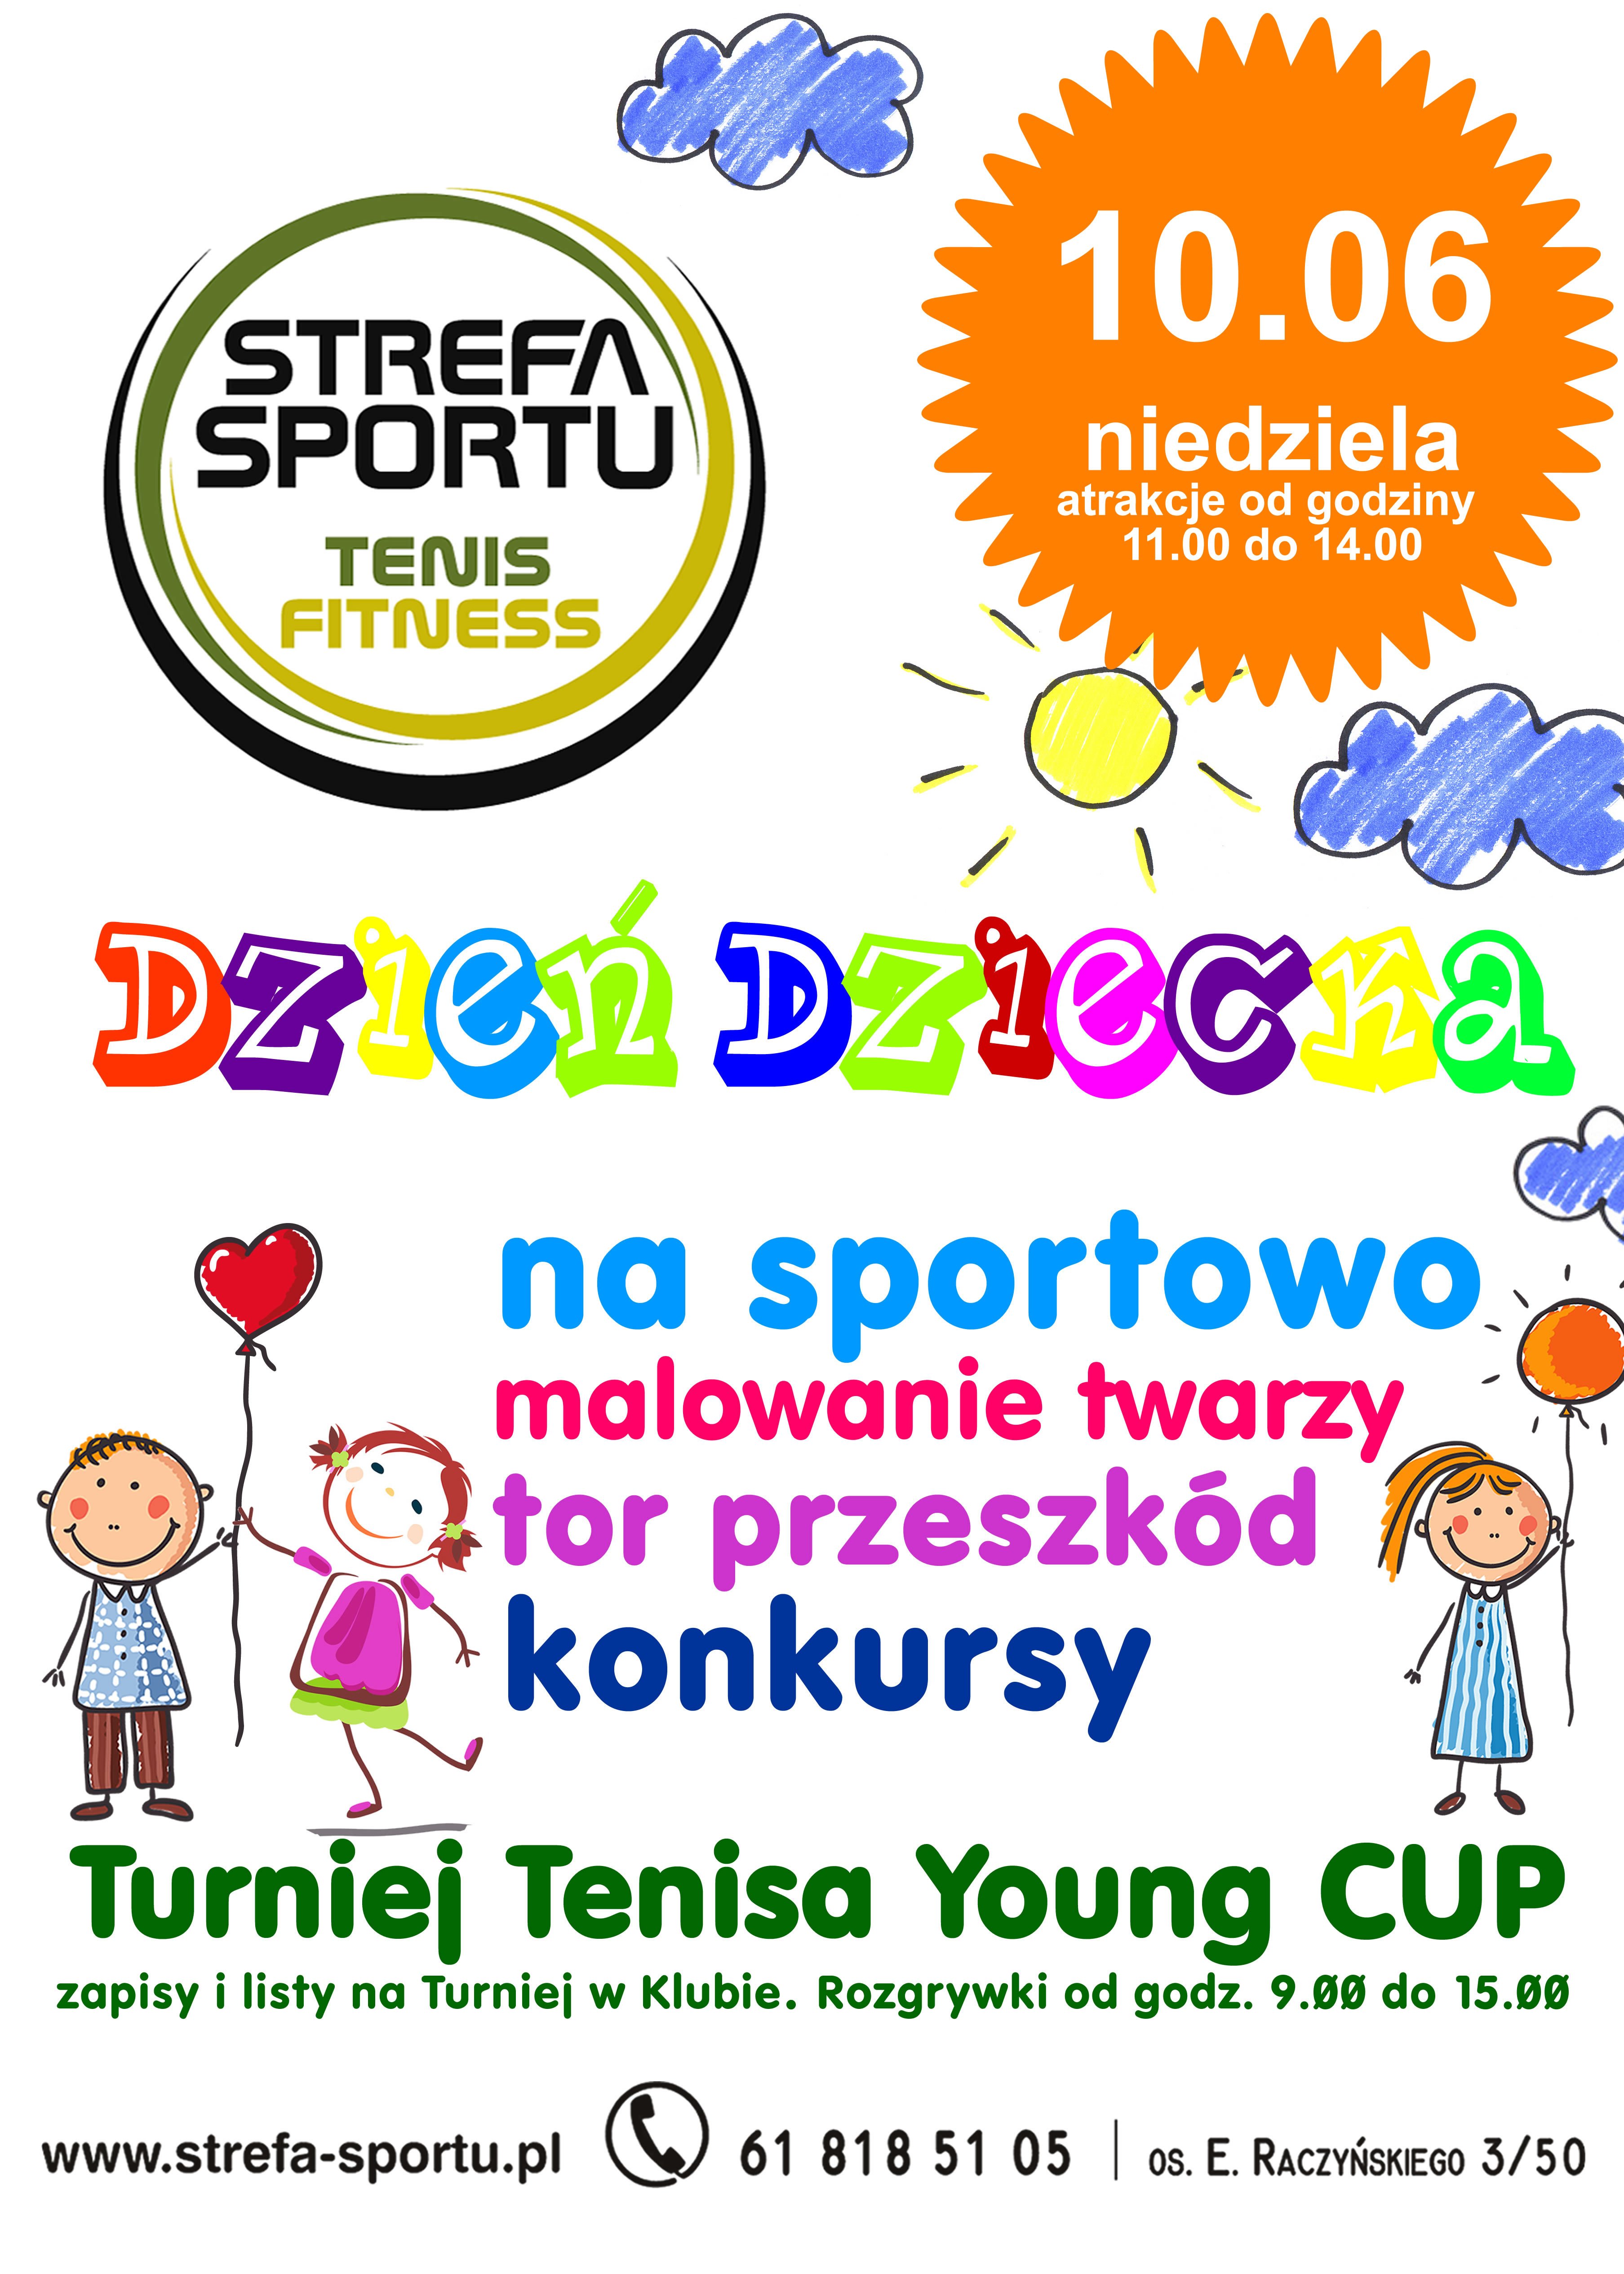 Dzień Dziecka 2018 oraz Strefa Sportu Young CUP